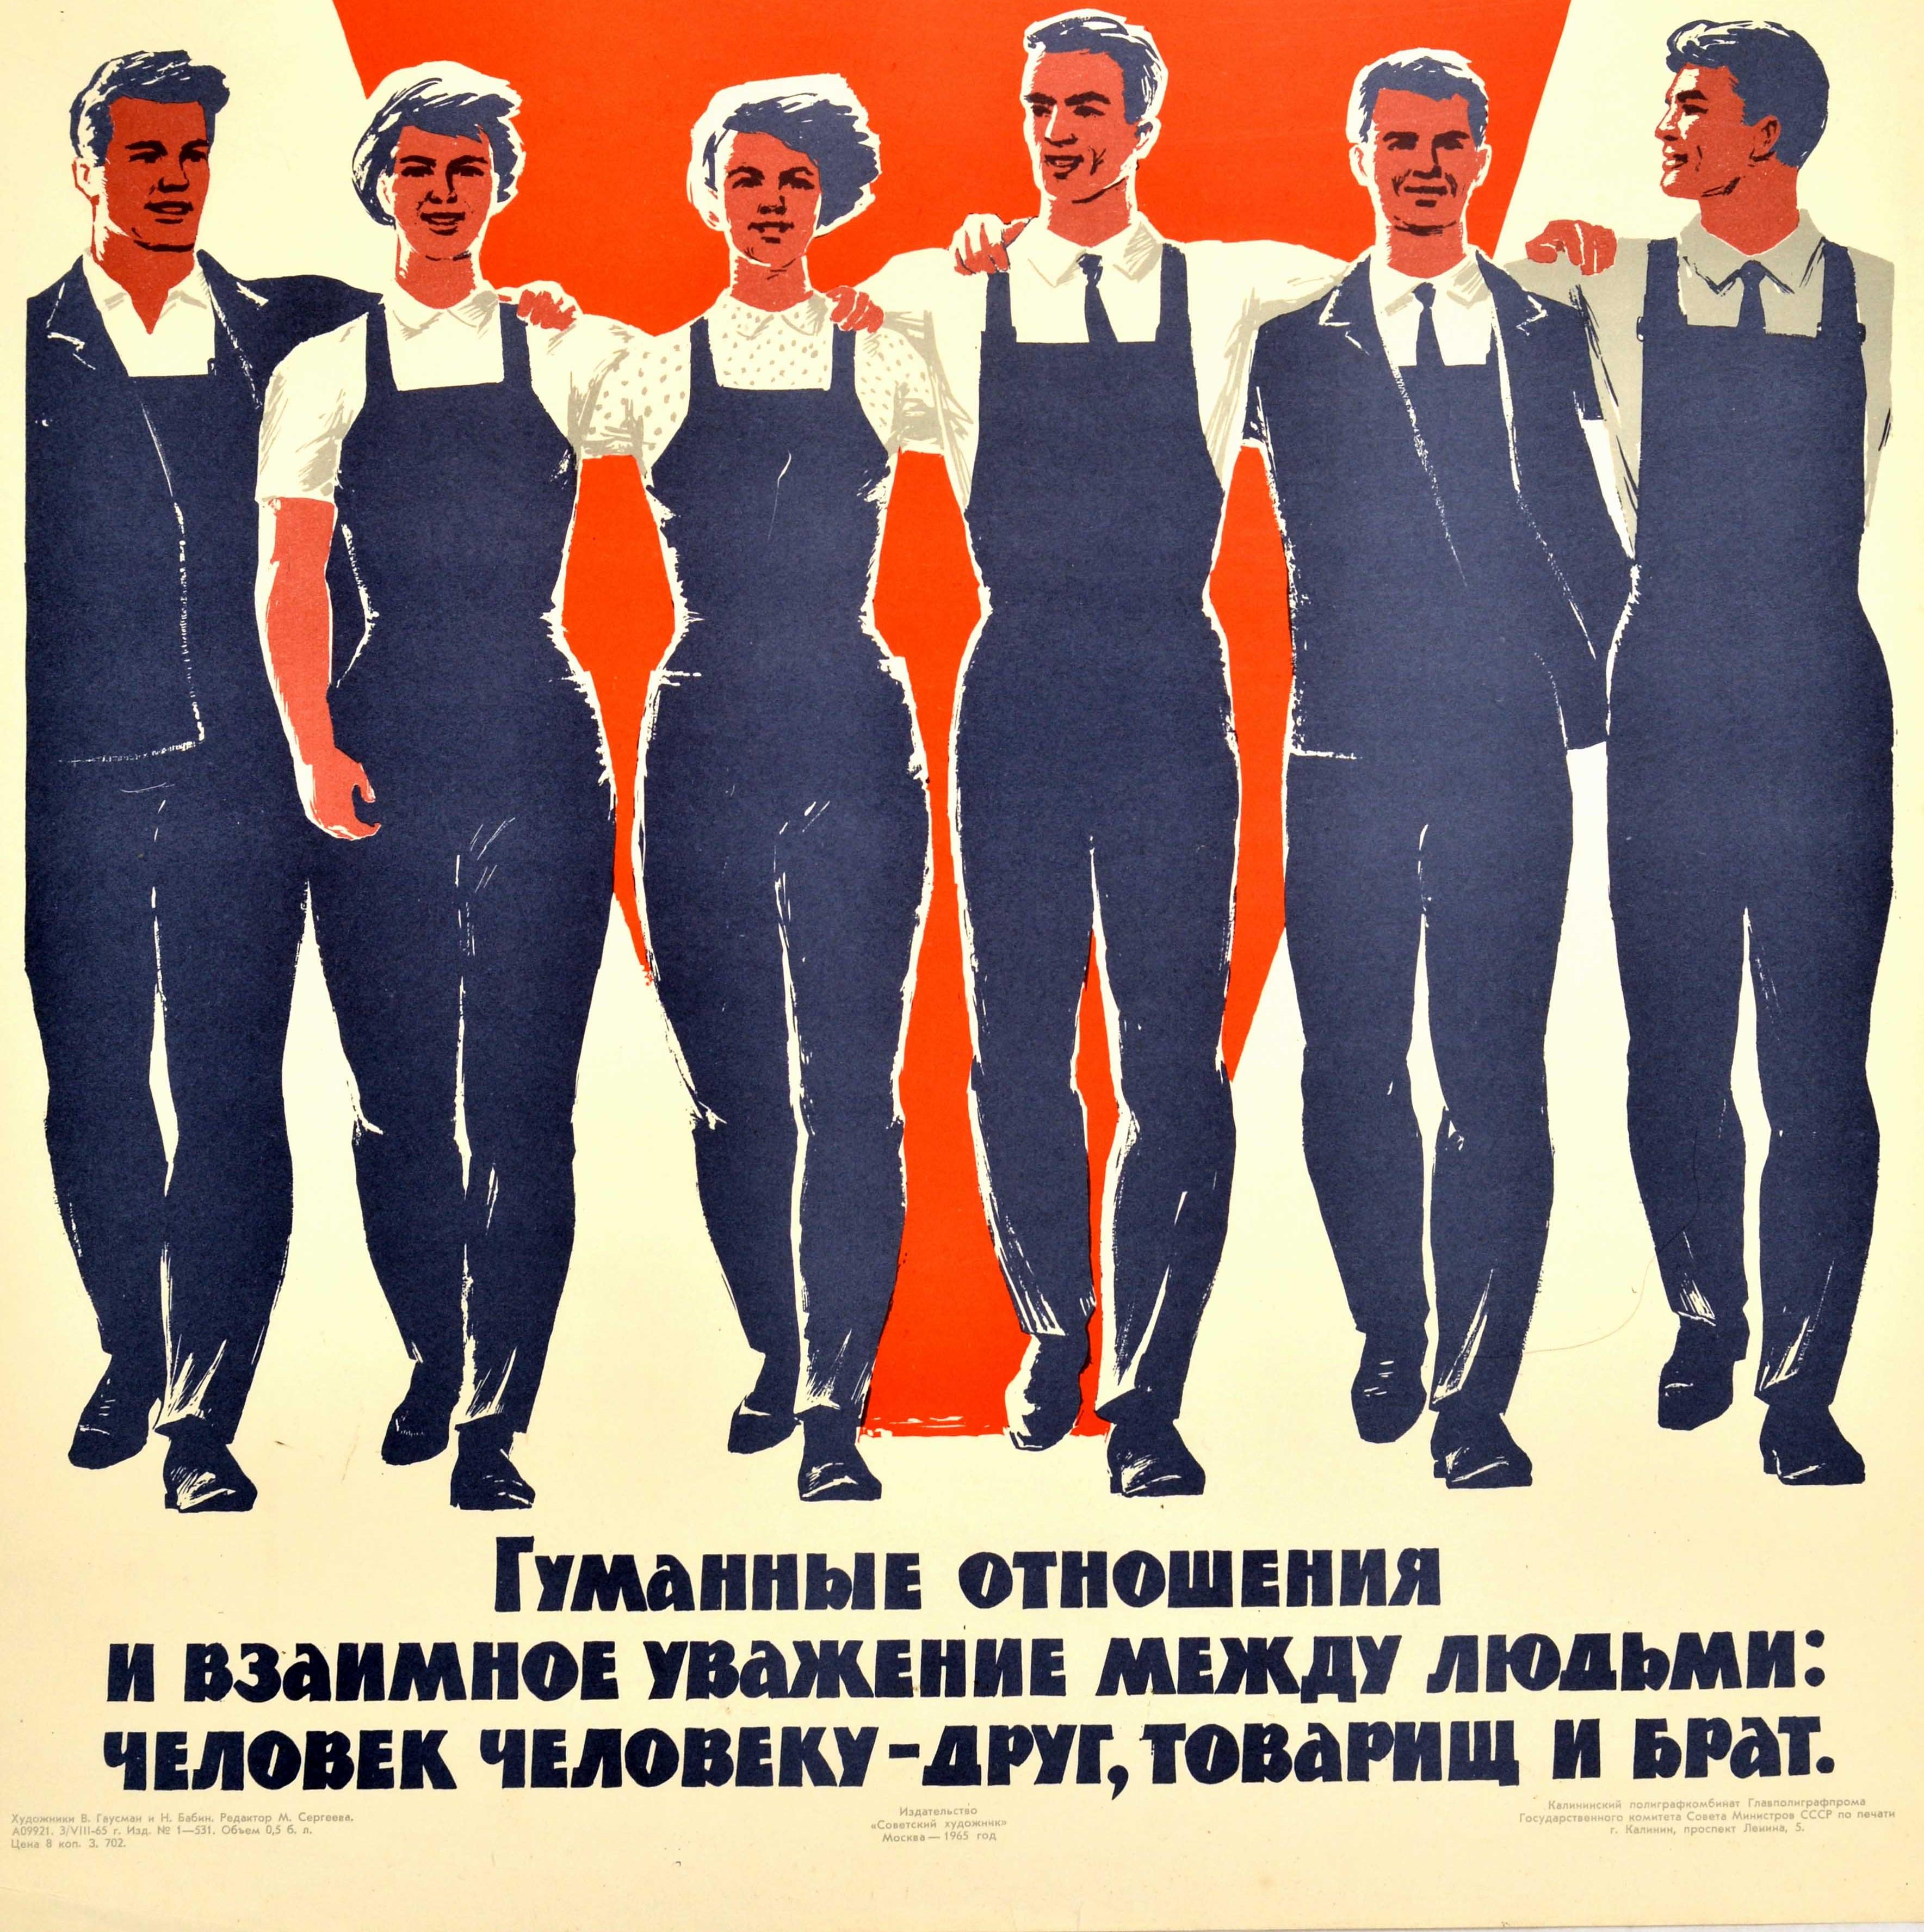 Originales sowjetisches Propagandaplakat - Kommunistisches Arbeitsteam Menschliche Beziehungen und gegenseitiger Respekt zwischen den Menschen: Ein Mensch ist dem anderen ein Freund, ein Genosse und ein Bruder - mit einem großartigen Motiv für den